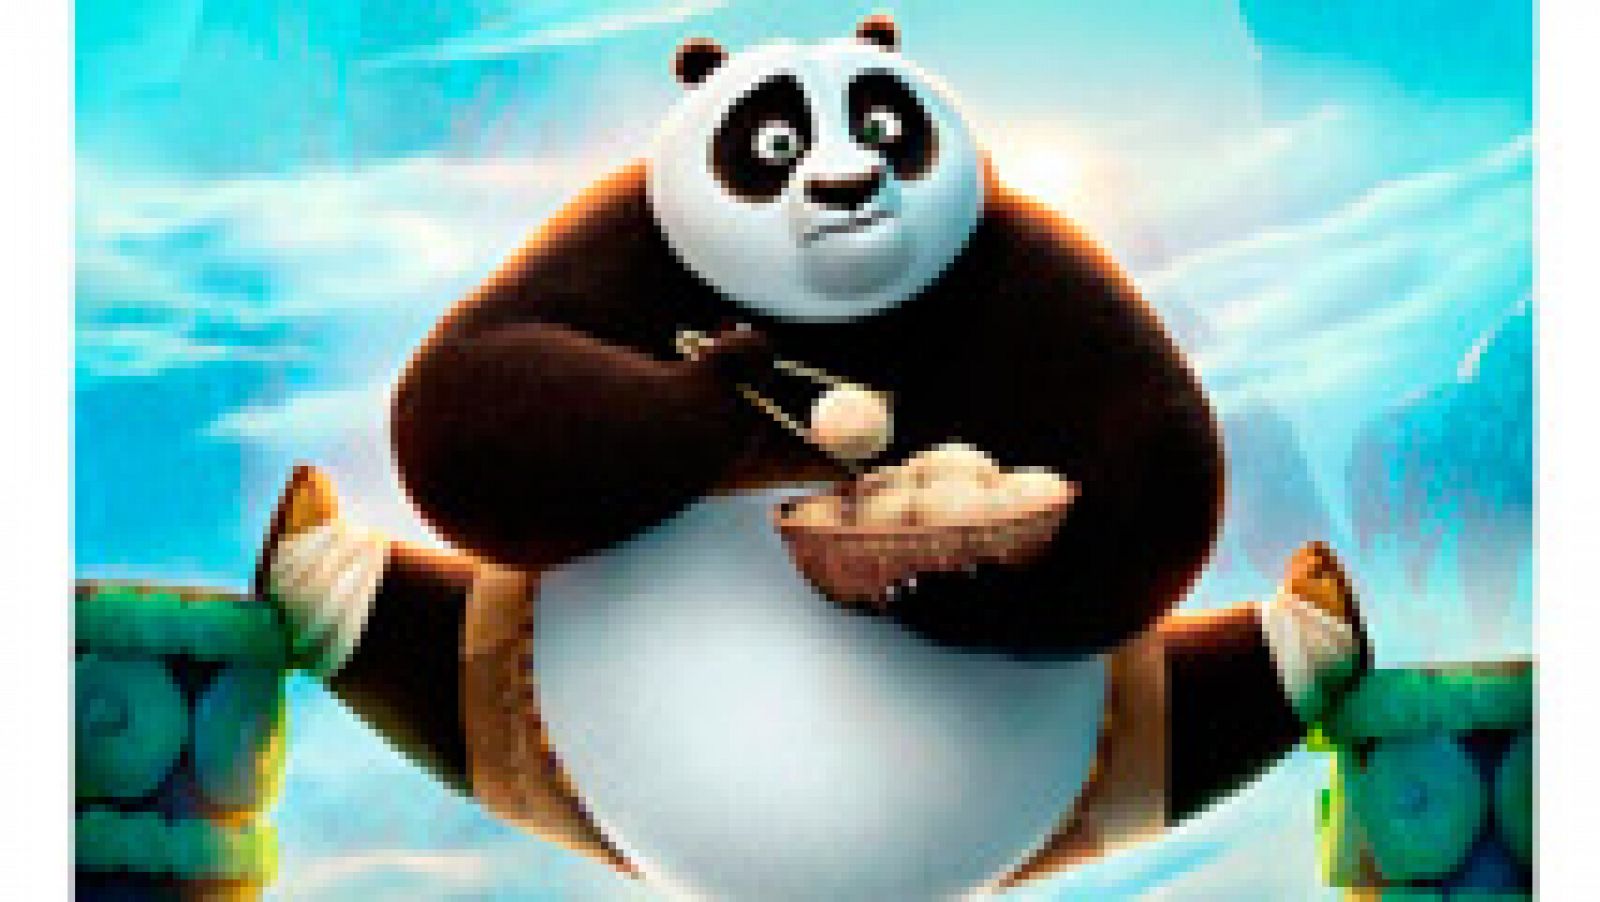 Rtve.es os ofrece un clip, en primicia, de 'Kung Fu Panda 3', que se estrena el 11 de marzo